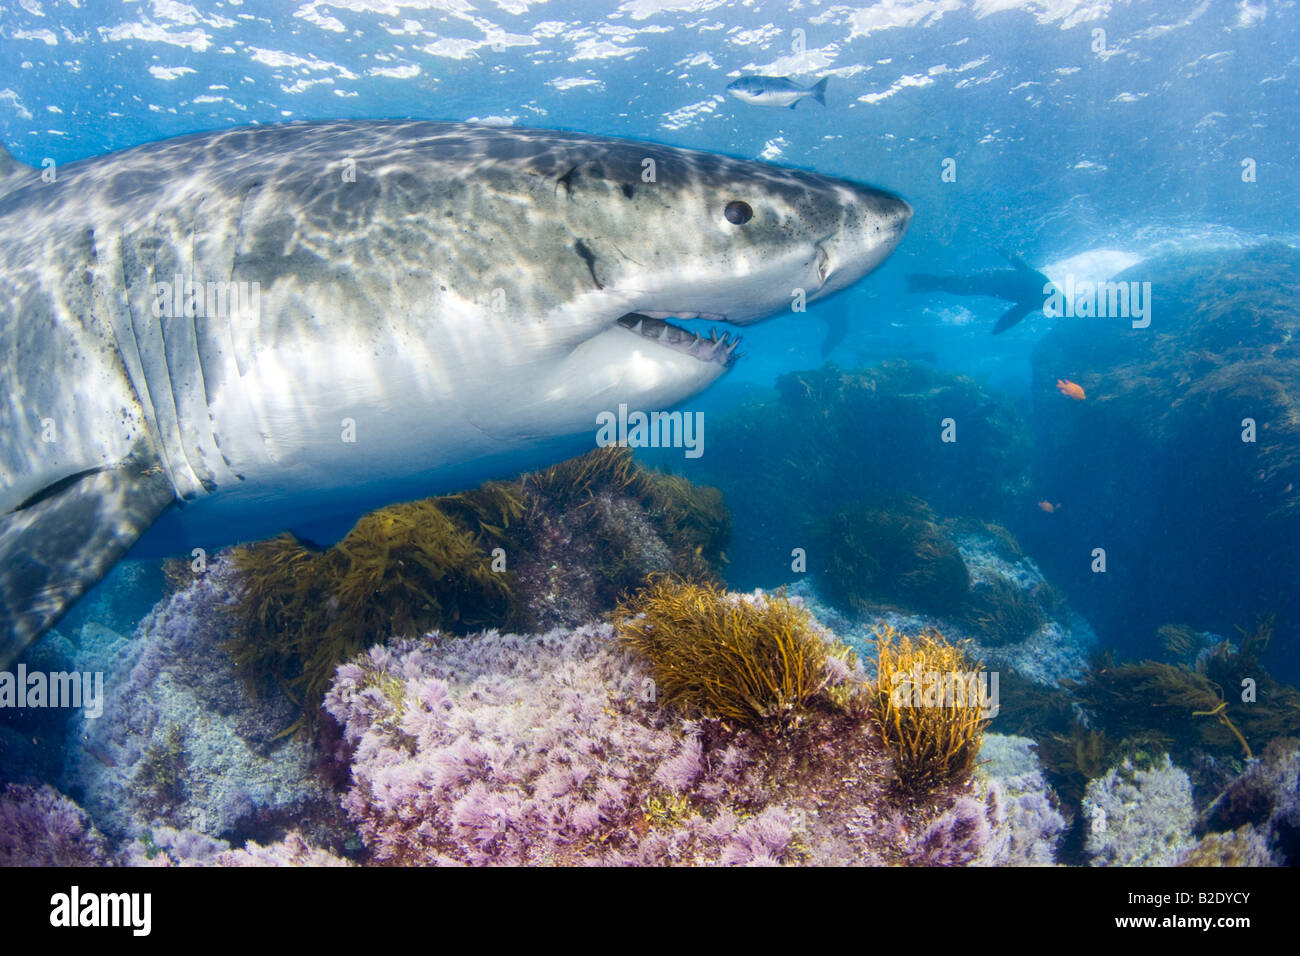 Ce grand requin blanc, Carcharodon carcharias, a été photographié sous la surface au large de l'île de Guadalupe, au Mexique. Banque D'Images